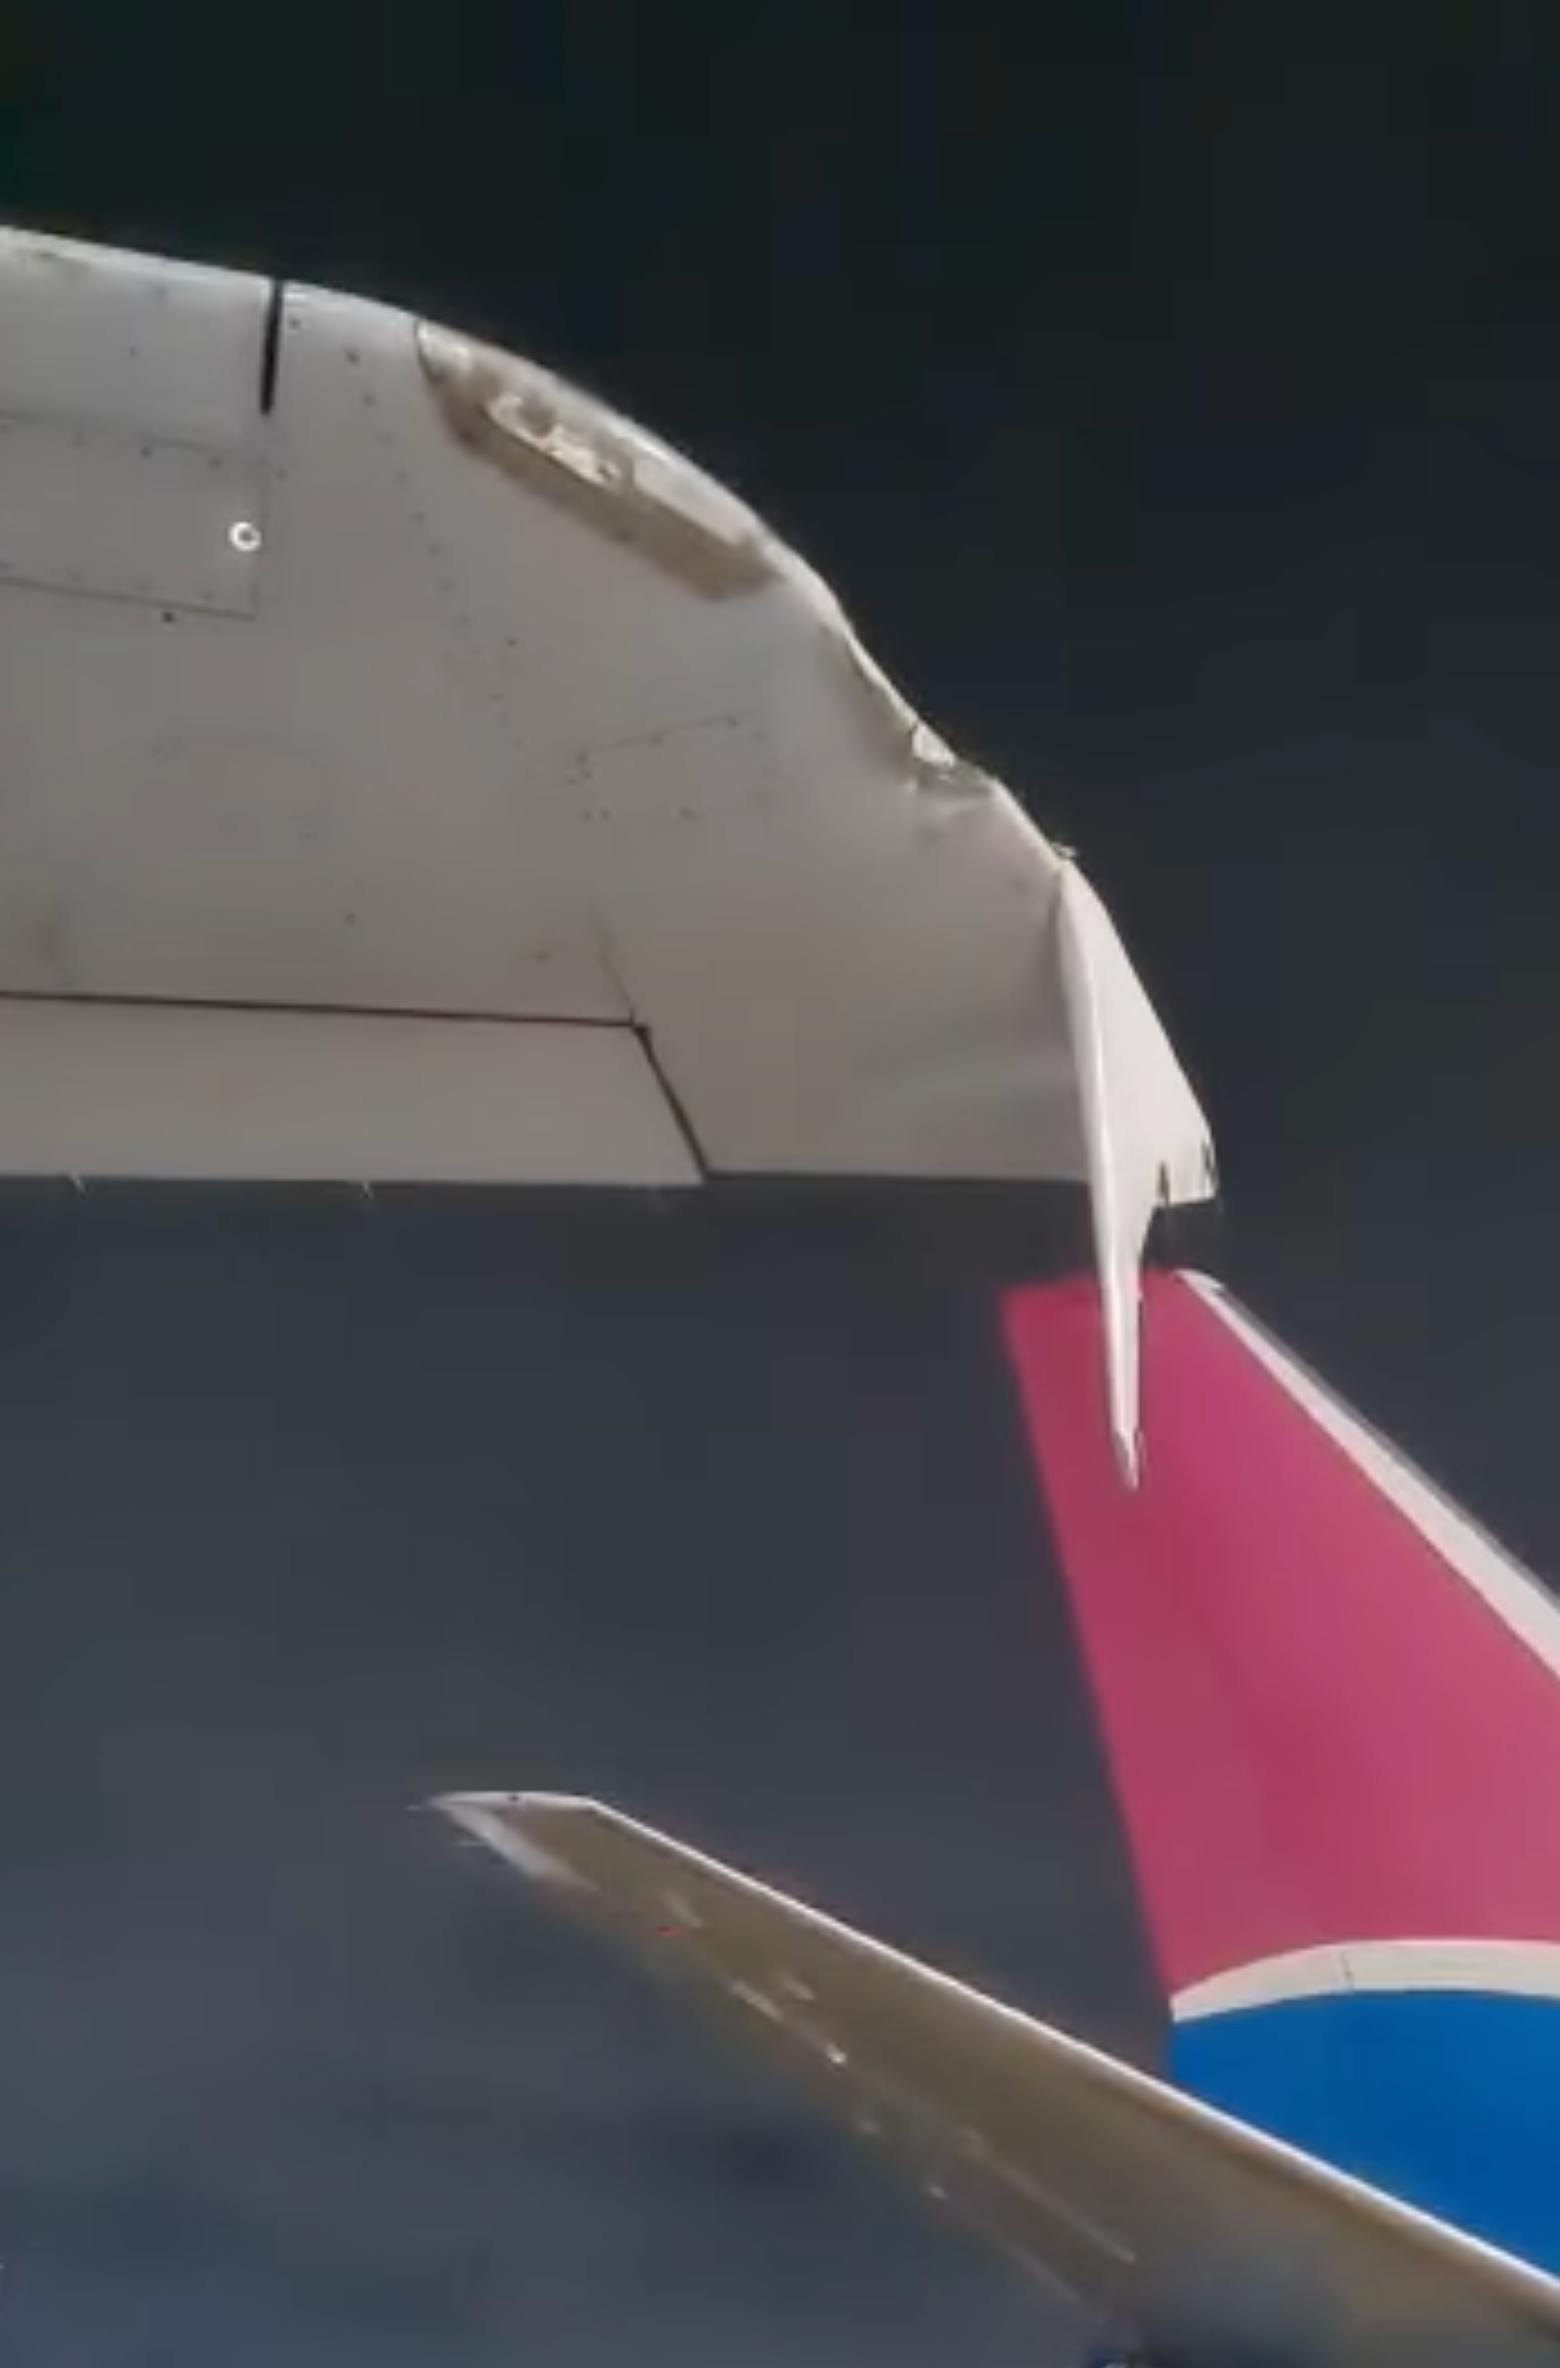 SAA Airbus A320 wingtip damage and FlySafair B737 at OR Tambo Airport